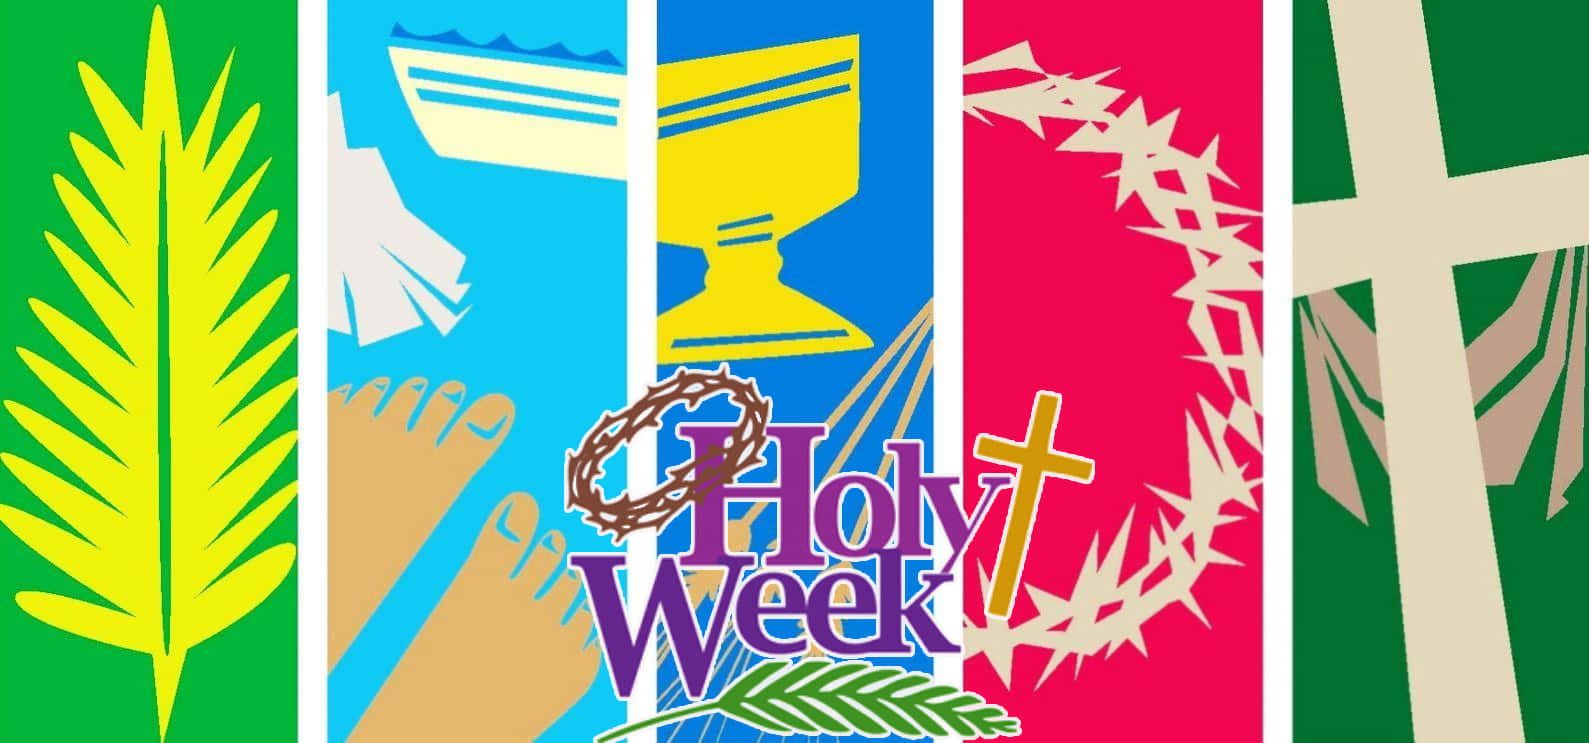 Celebrating Holy Week Wallpaper